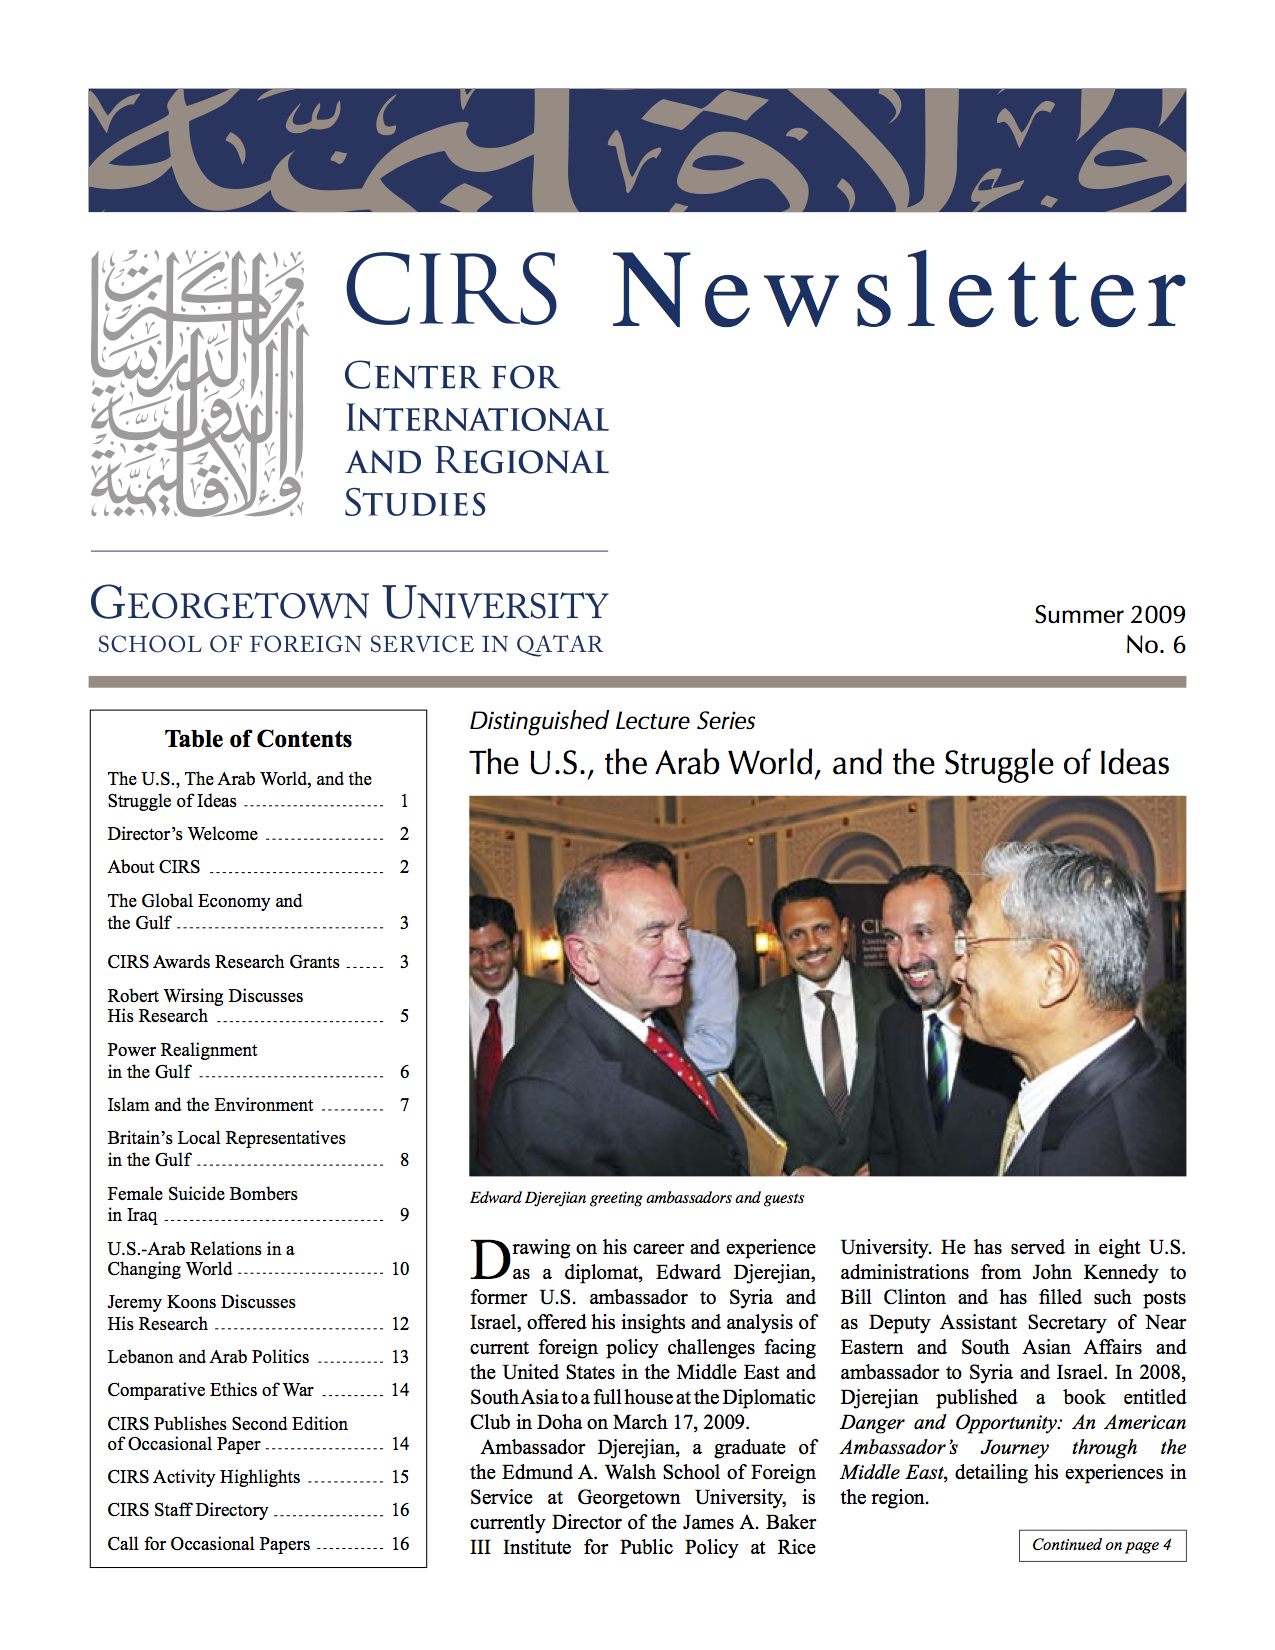 CIRS Newsletter No. 06